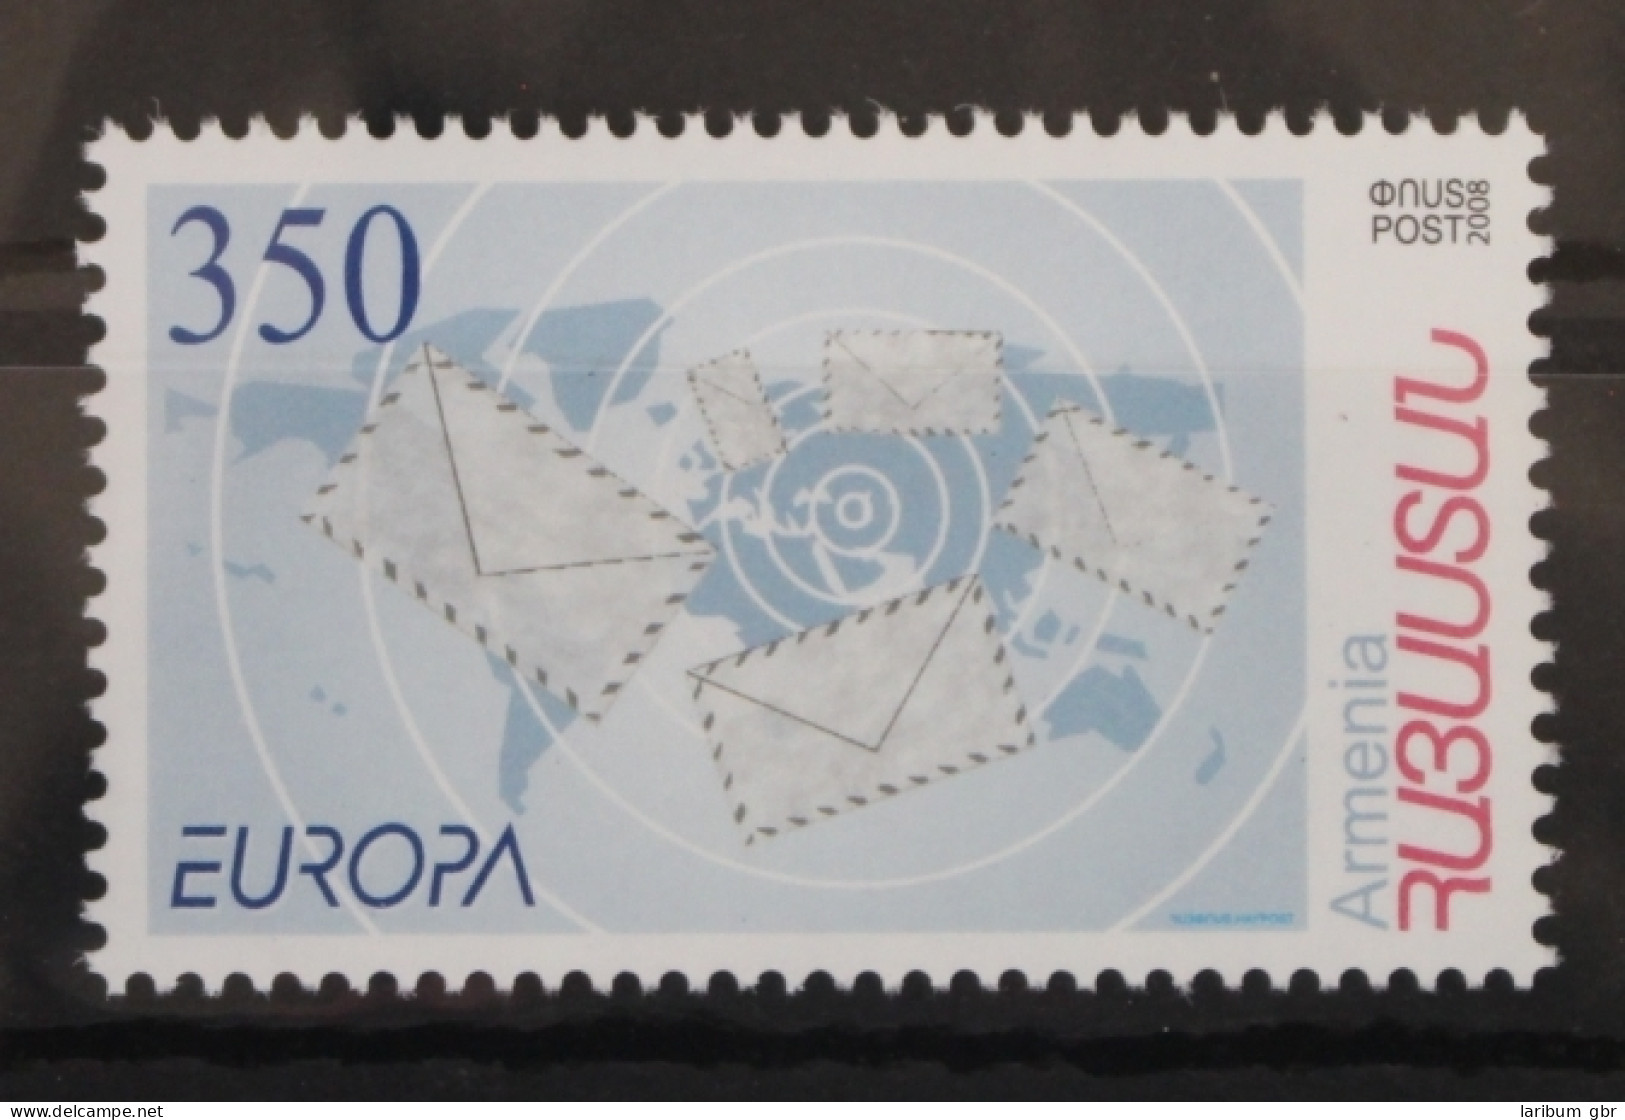 Armenien 638 Postfrisch Europa Der Brief #VT348 - Armenia